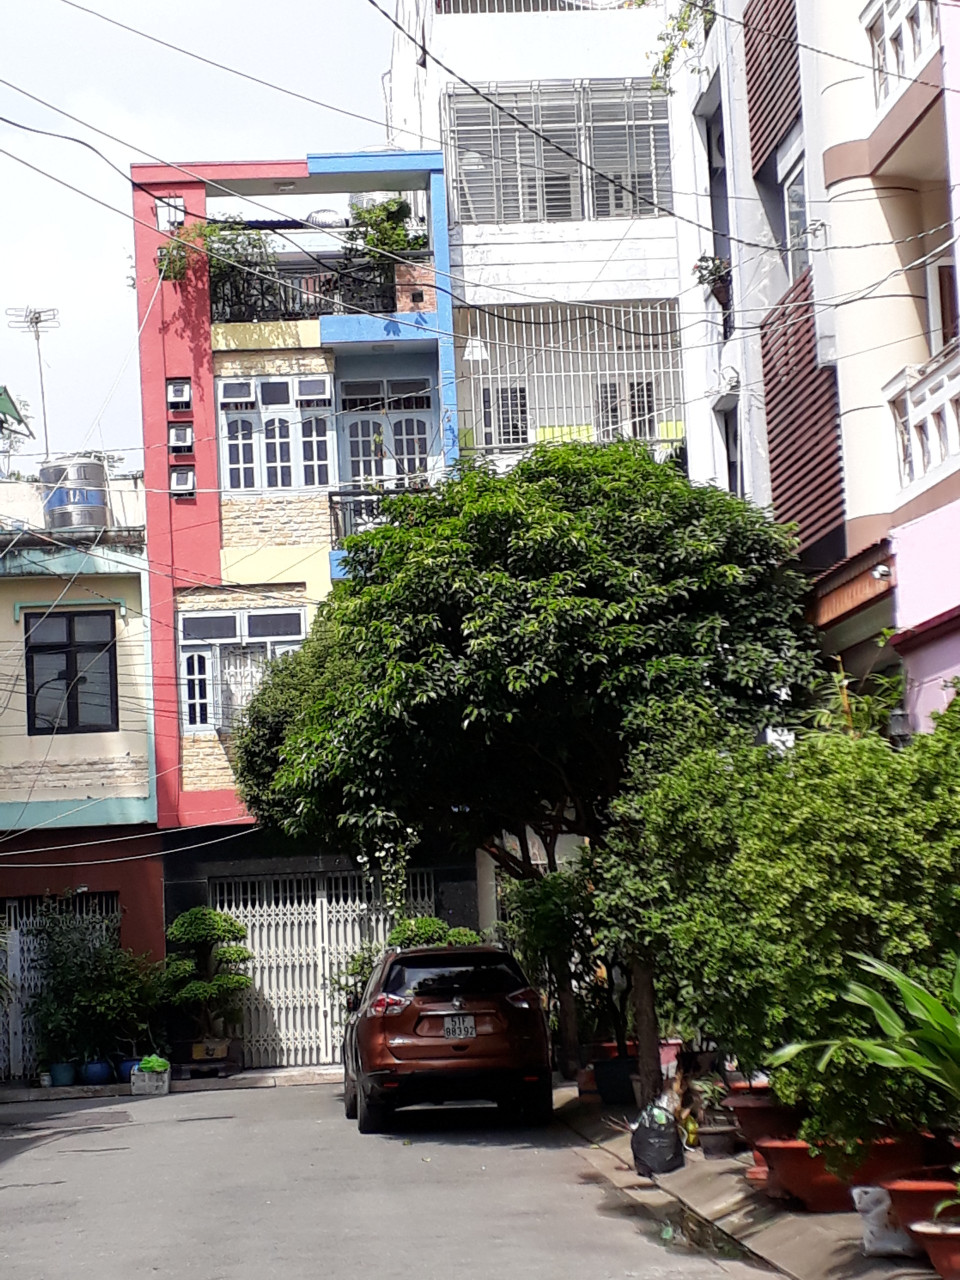 Cần bán gấp căn nhà 4 tầng 2 MT Phan Văn Trị, P7, Q5 gần Trần Hưng Đạo, Huỳnh Mẫn Đạt.